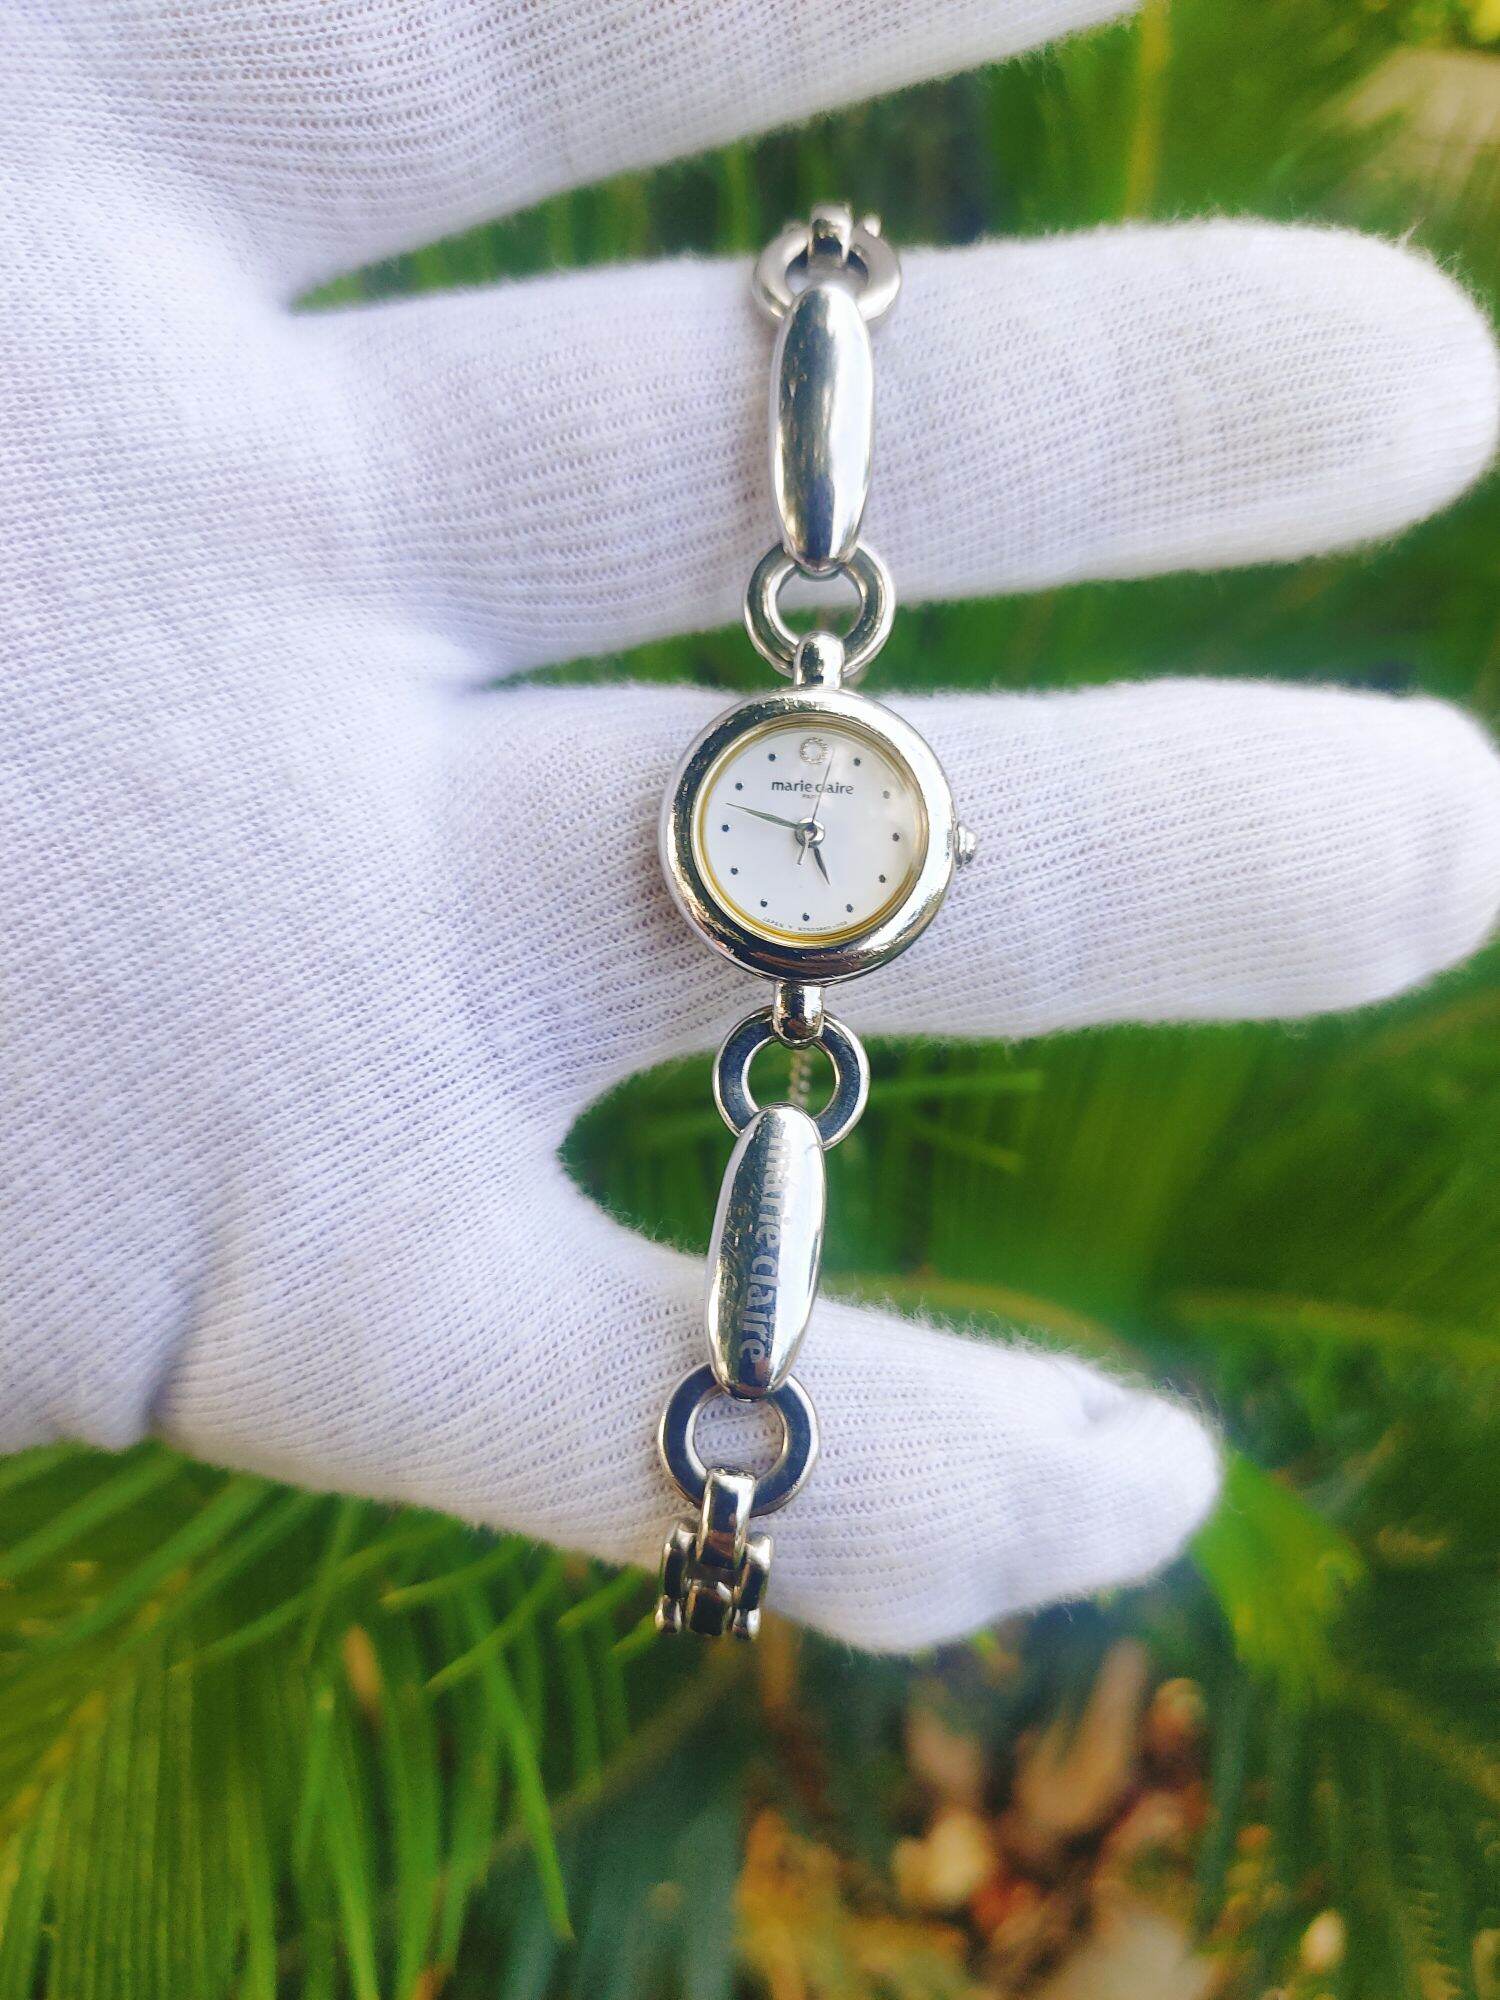 Đồng hồ Marie claire lắc nữ Nhật Bản, size 19mm, hình thức đẹp 95%, dây khóa zin thép không rỉ